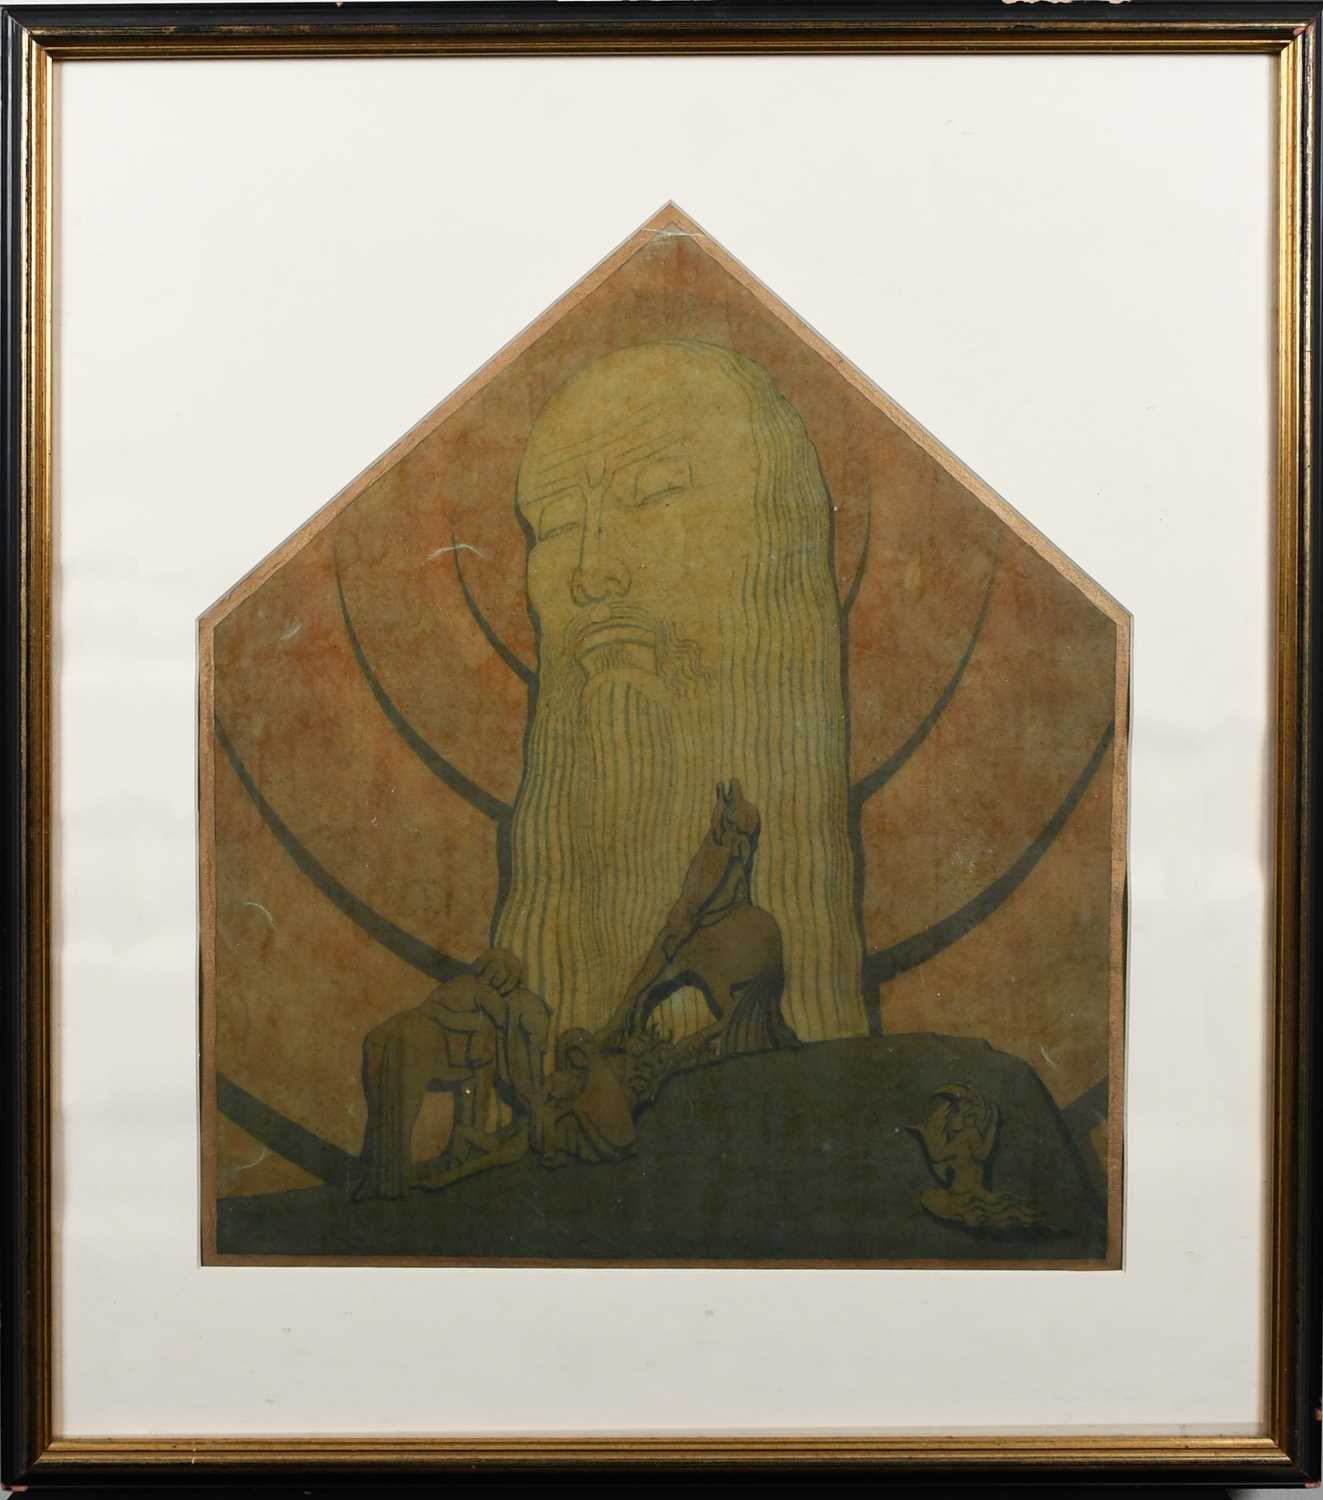 Φ Hector Whistler (1905-1978) A biblical scene, possibly a stage design Pencil and watercolour, with - Image 3 of 5